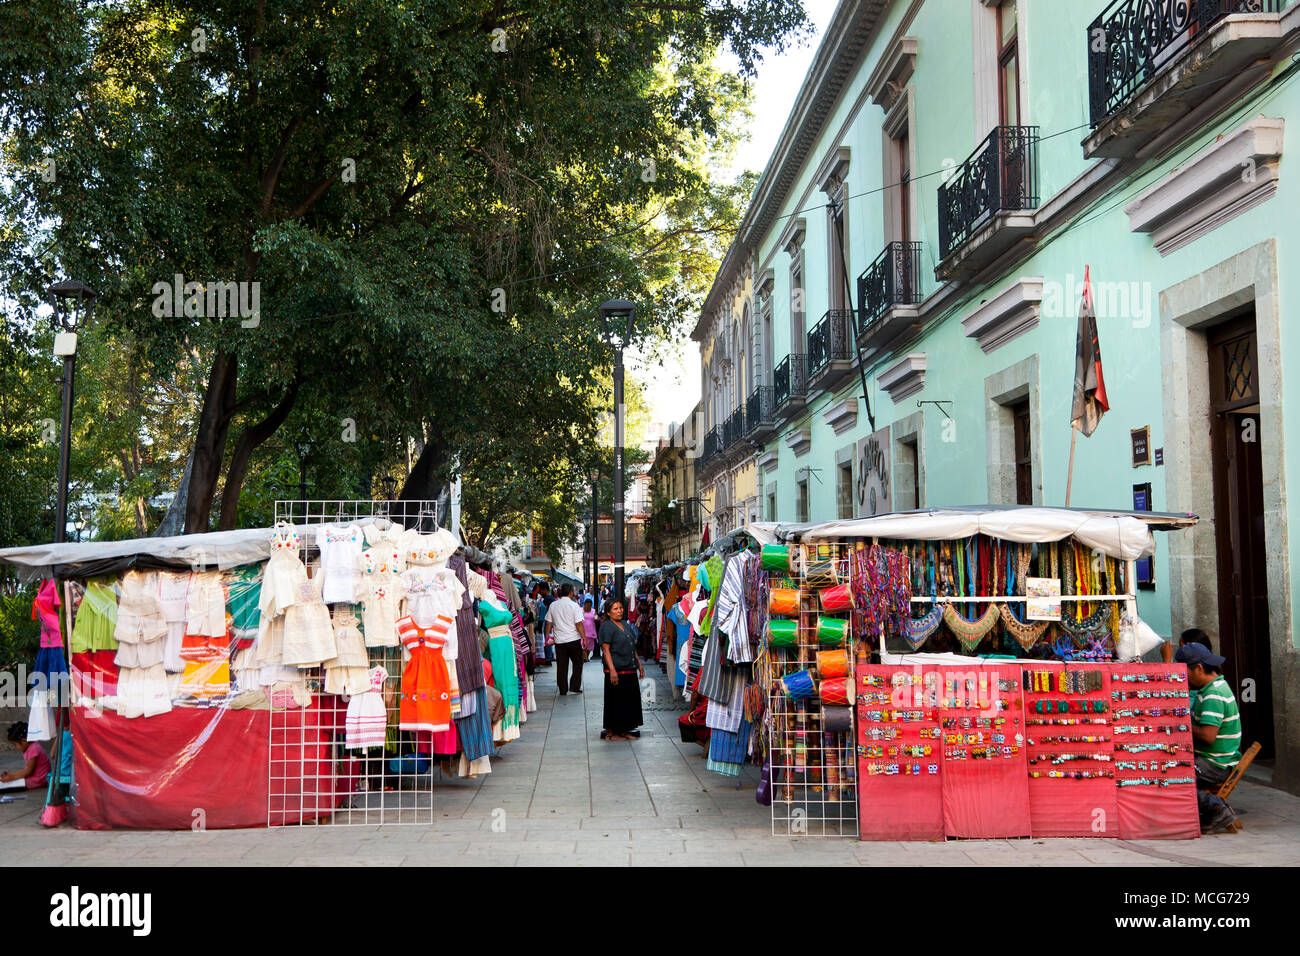 Le marché en plein air dans le centre historique de la ville d'Oaxaca Oaxaca, Mexique Banque D'Images